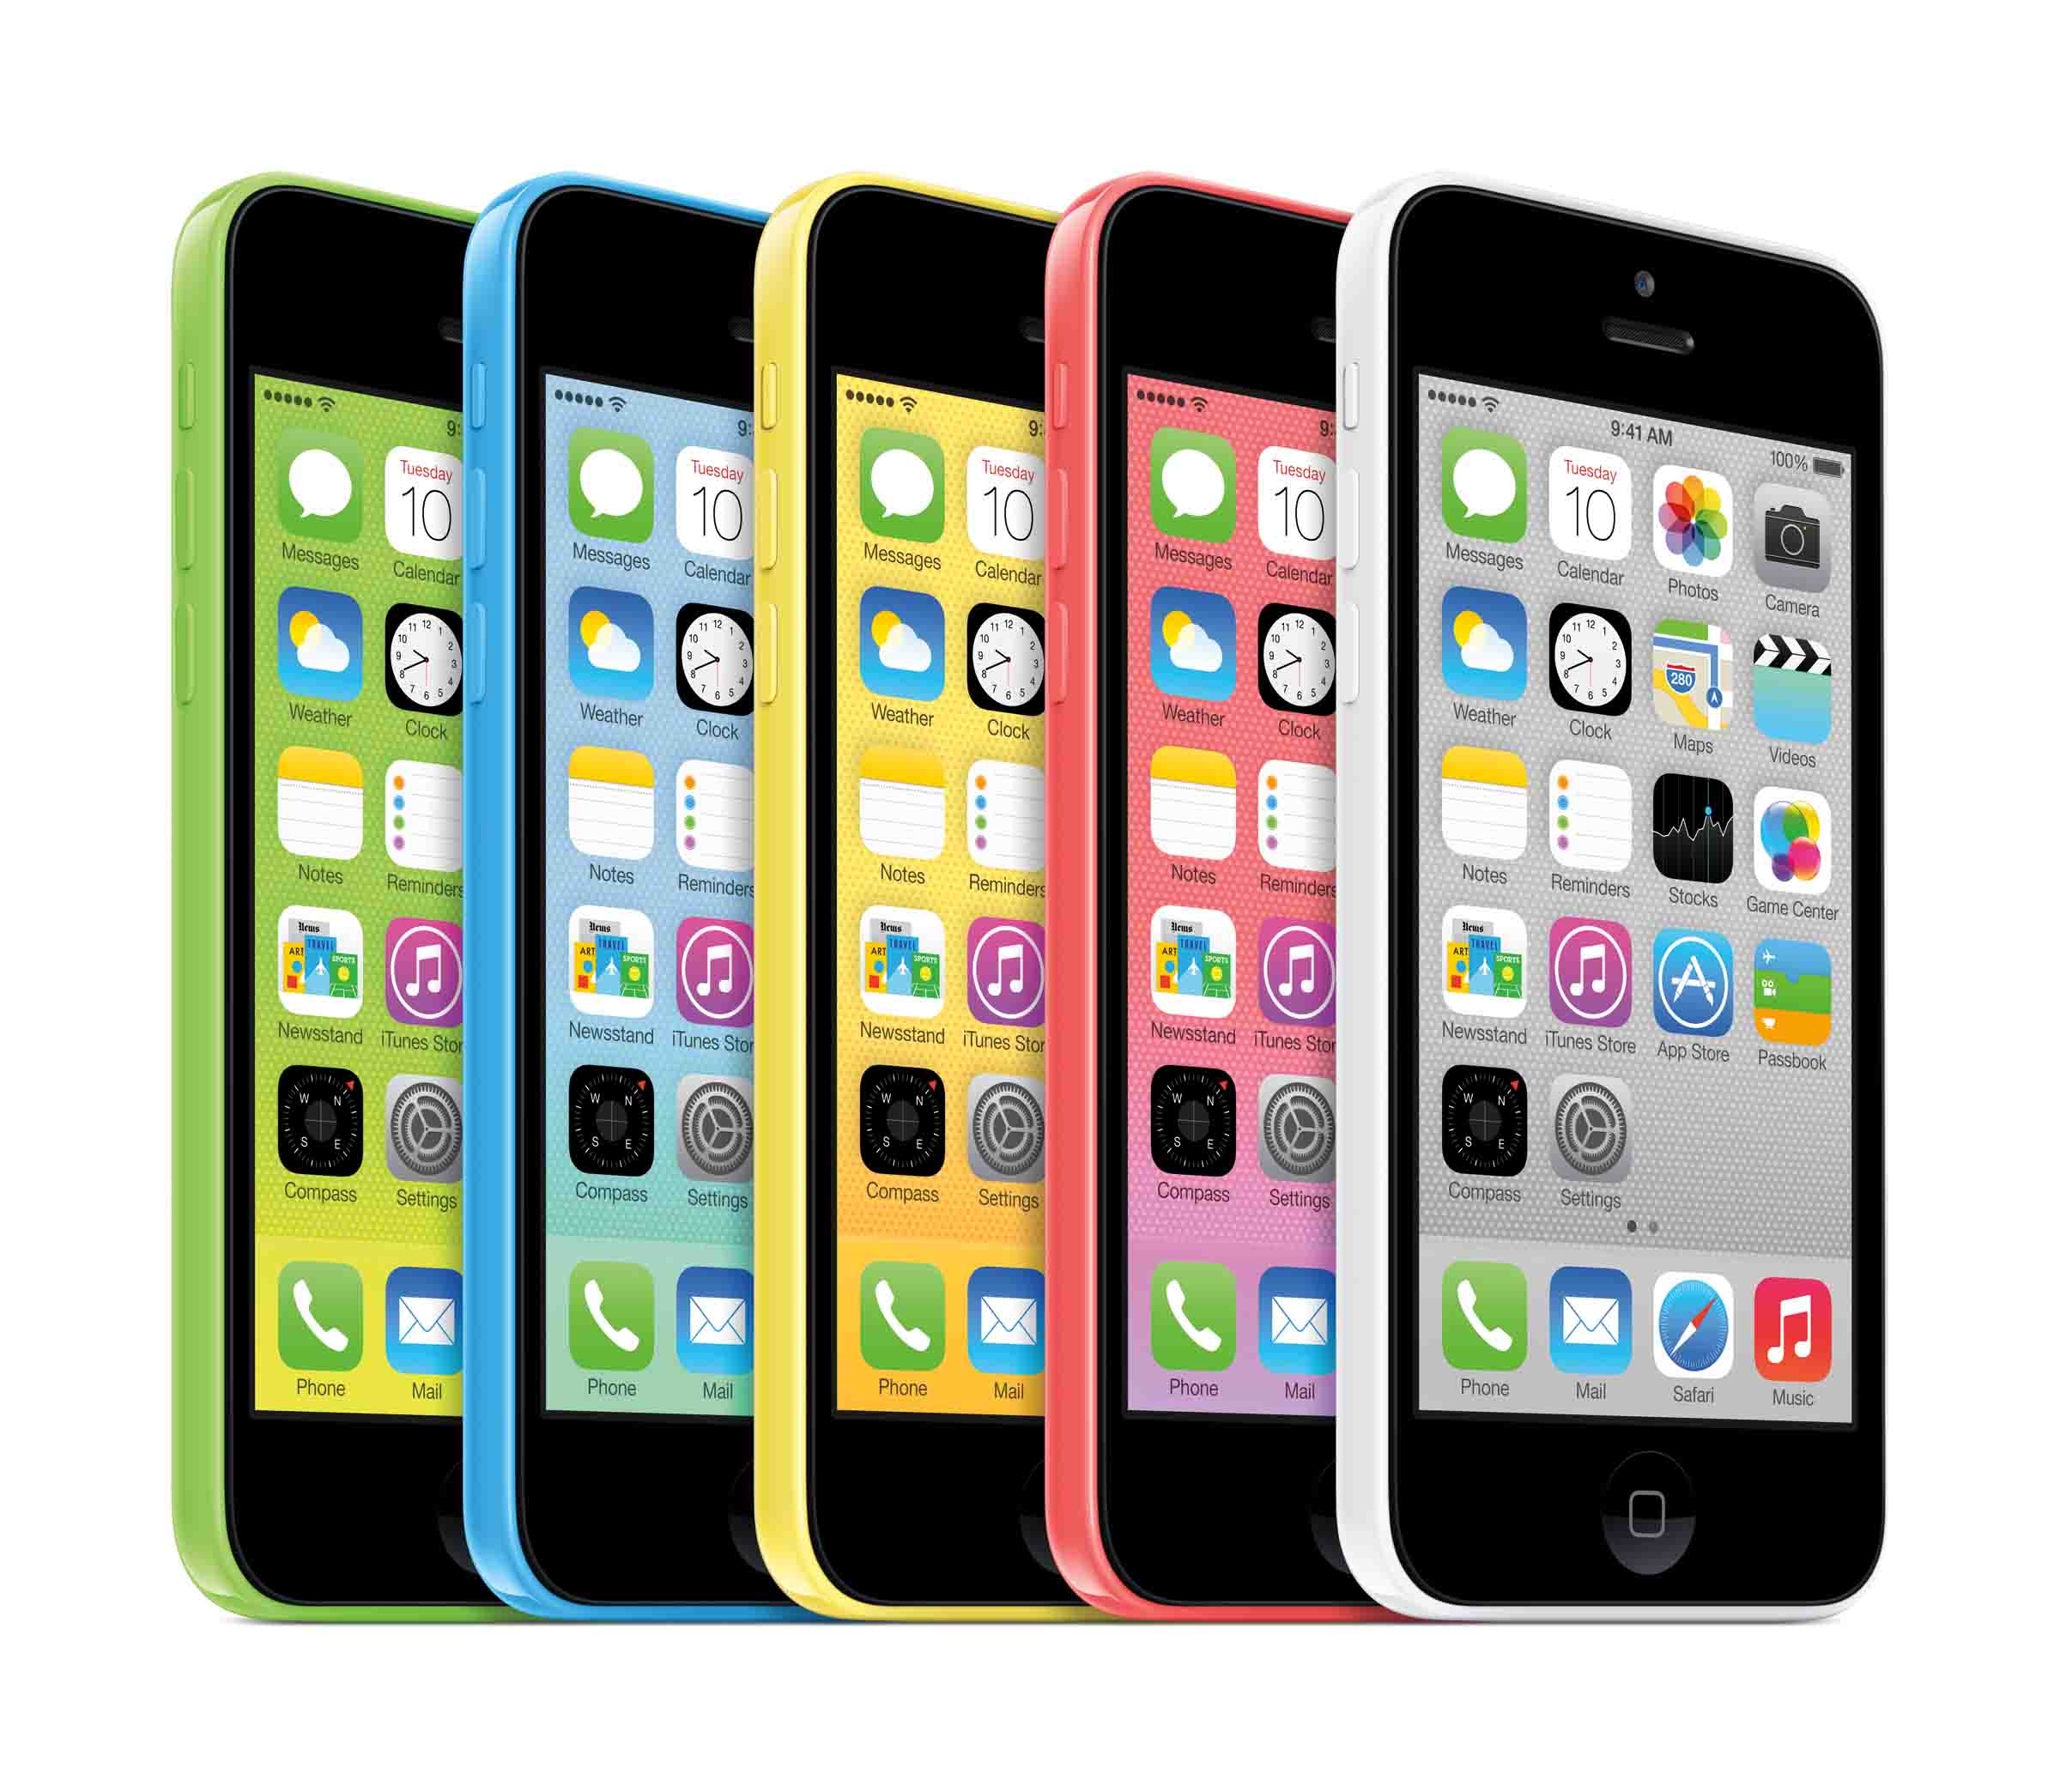 Das neue iPhone 5c – jetzt noch günstiger bei Blue Deals